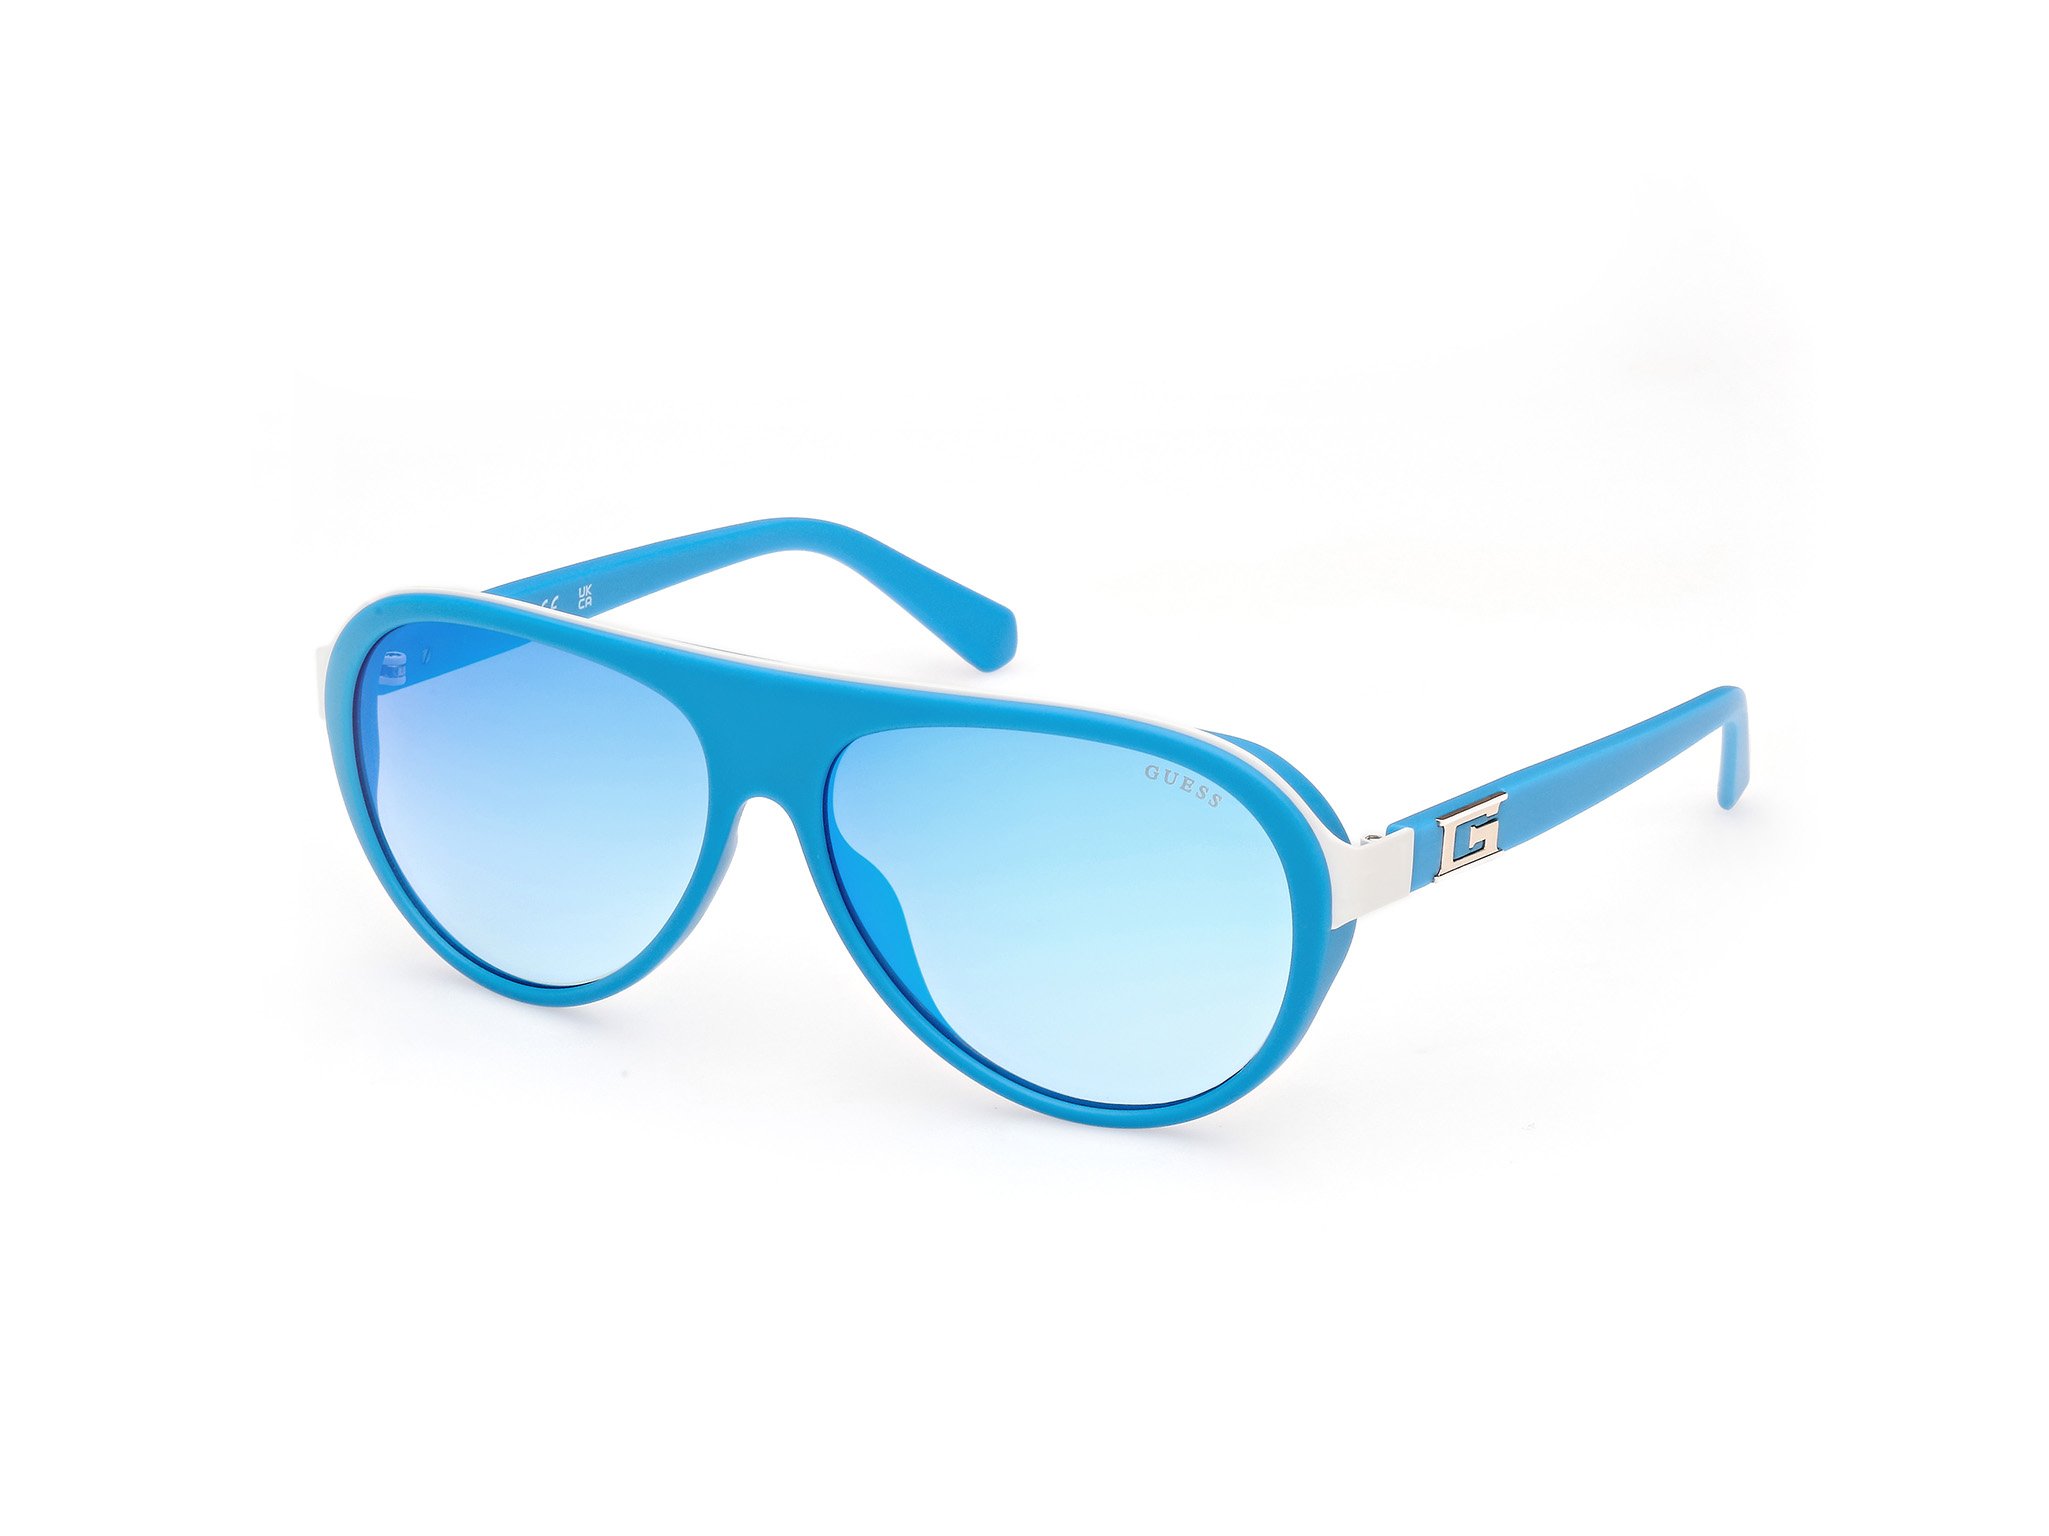 Das Bild zeigt die Sonnenbrille GU00125 91X von der Marke Blau in Violett.